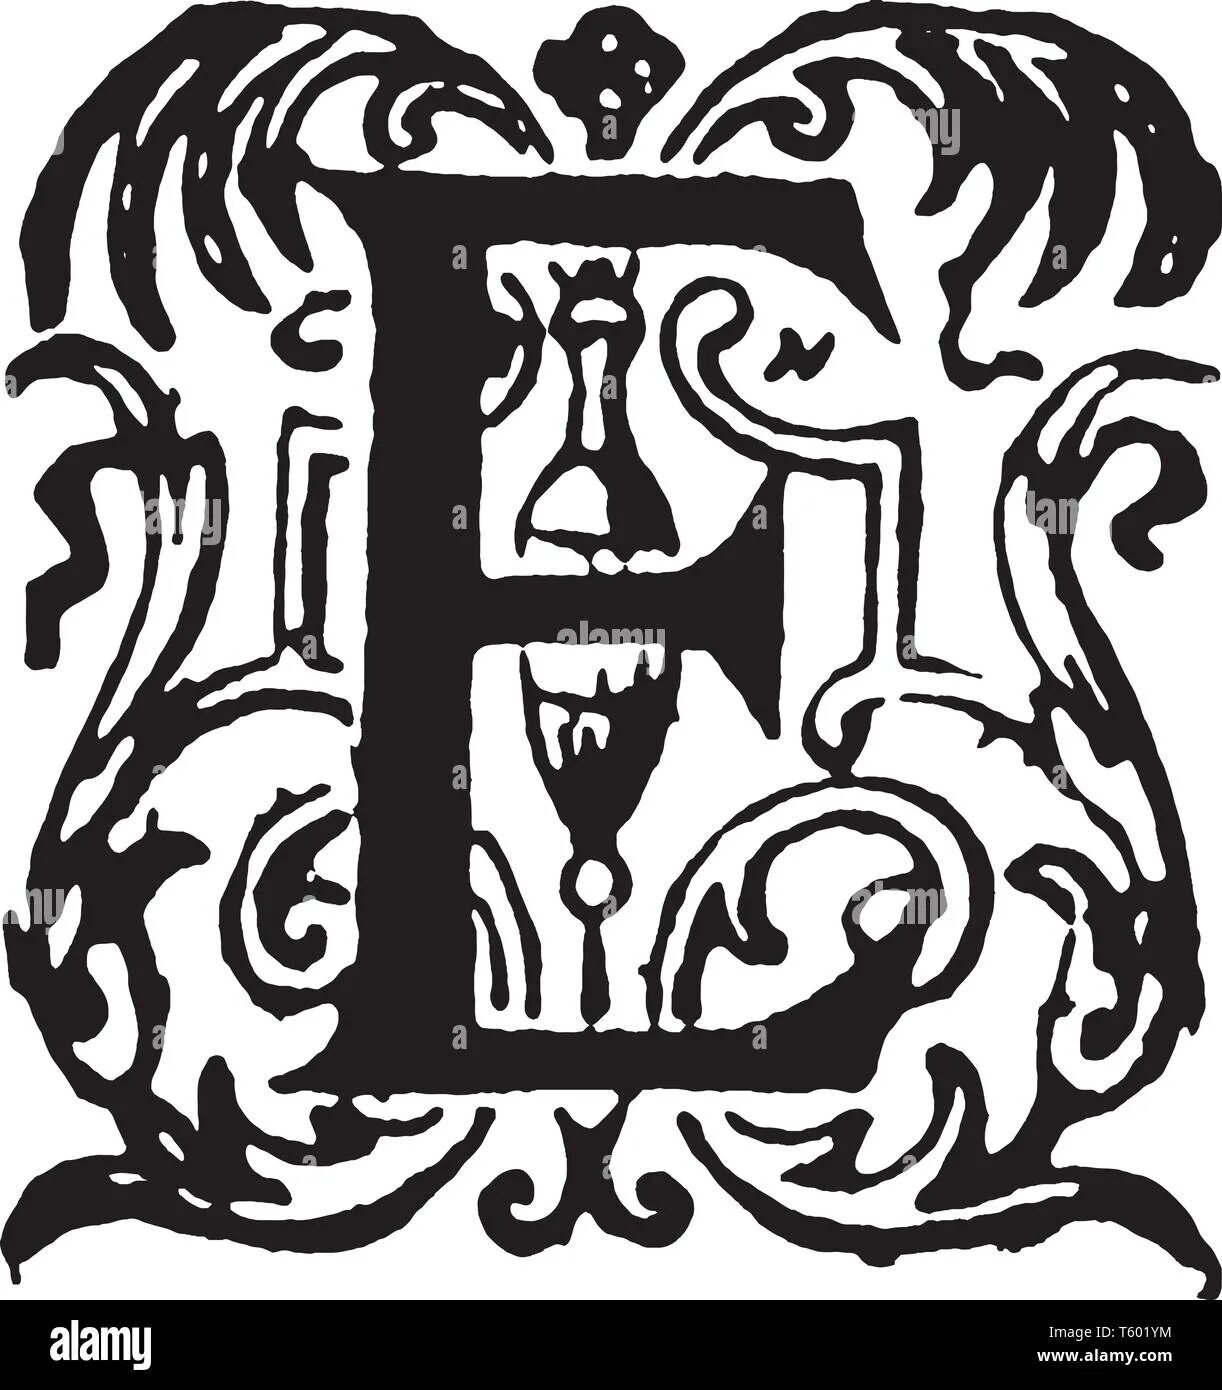 Буква e. Эмблема с буквой е. Герб с буквой е. Буква е в разных стилях.